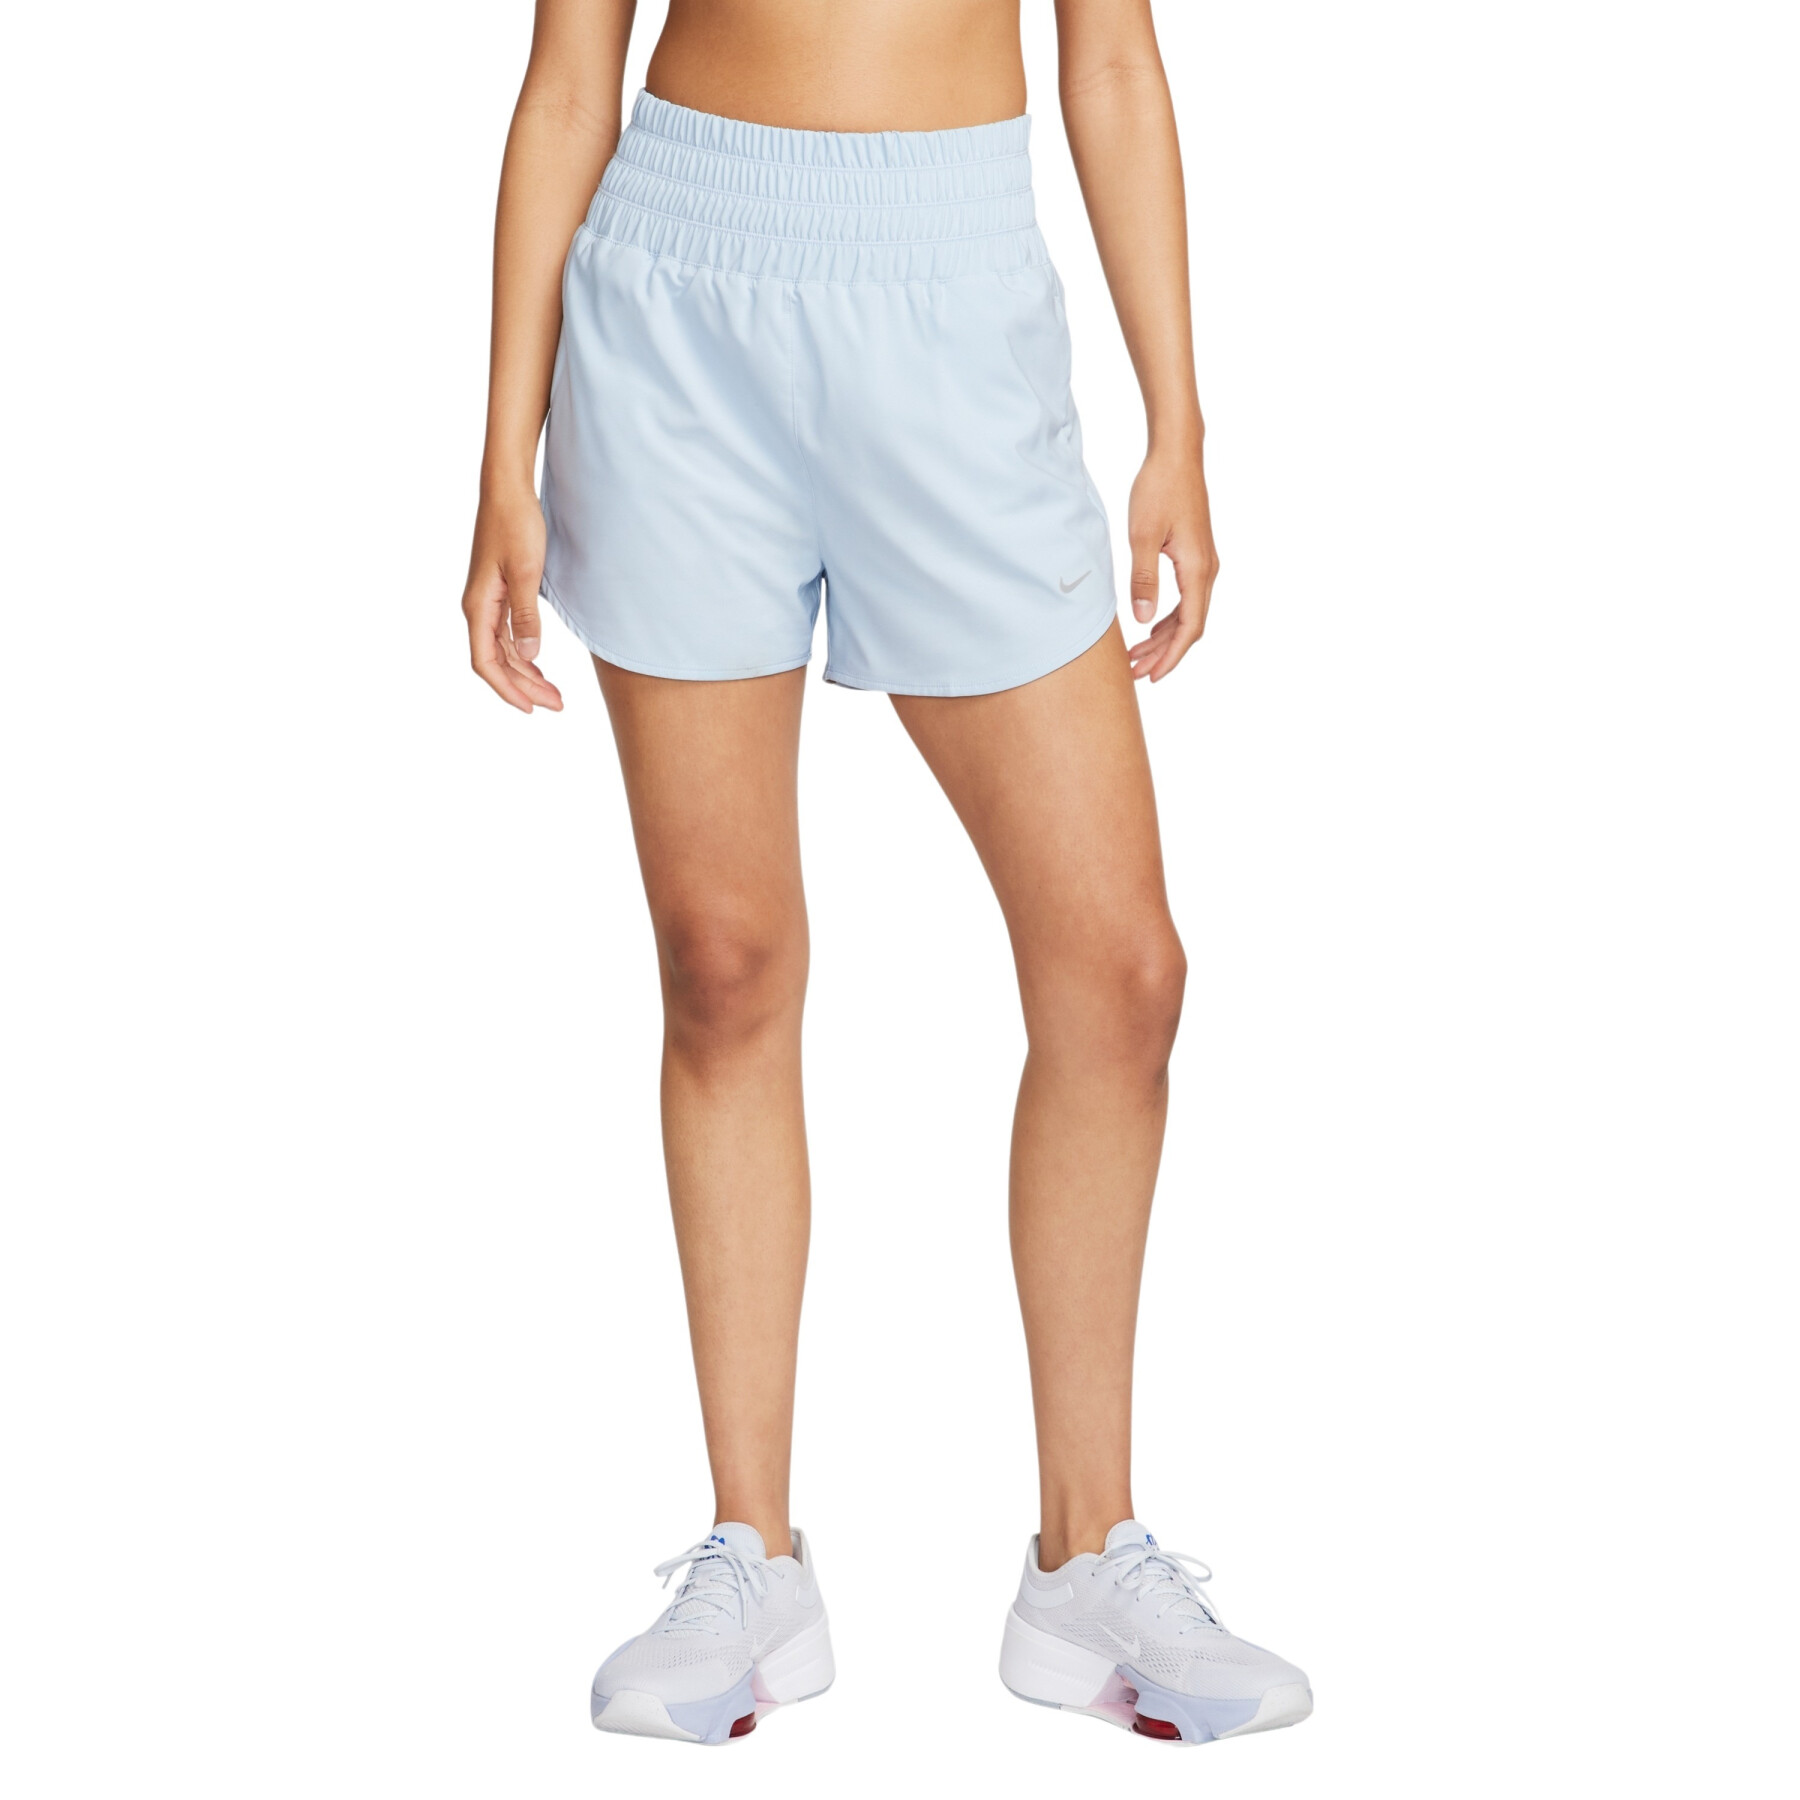 Pantaloncini da donna a vita altissima con sottopantaloncino integrato Nike One Dri-FIT